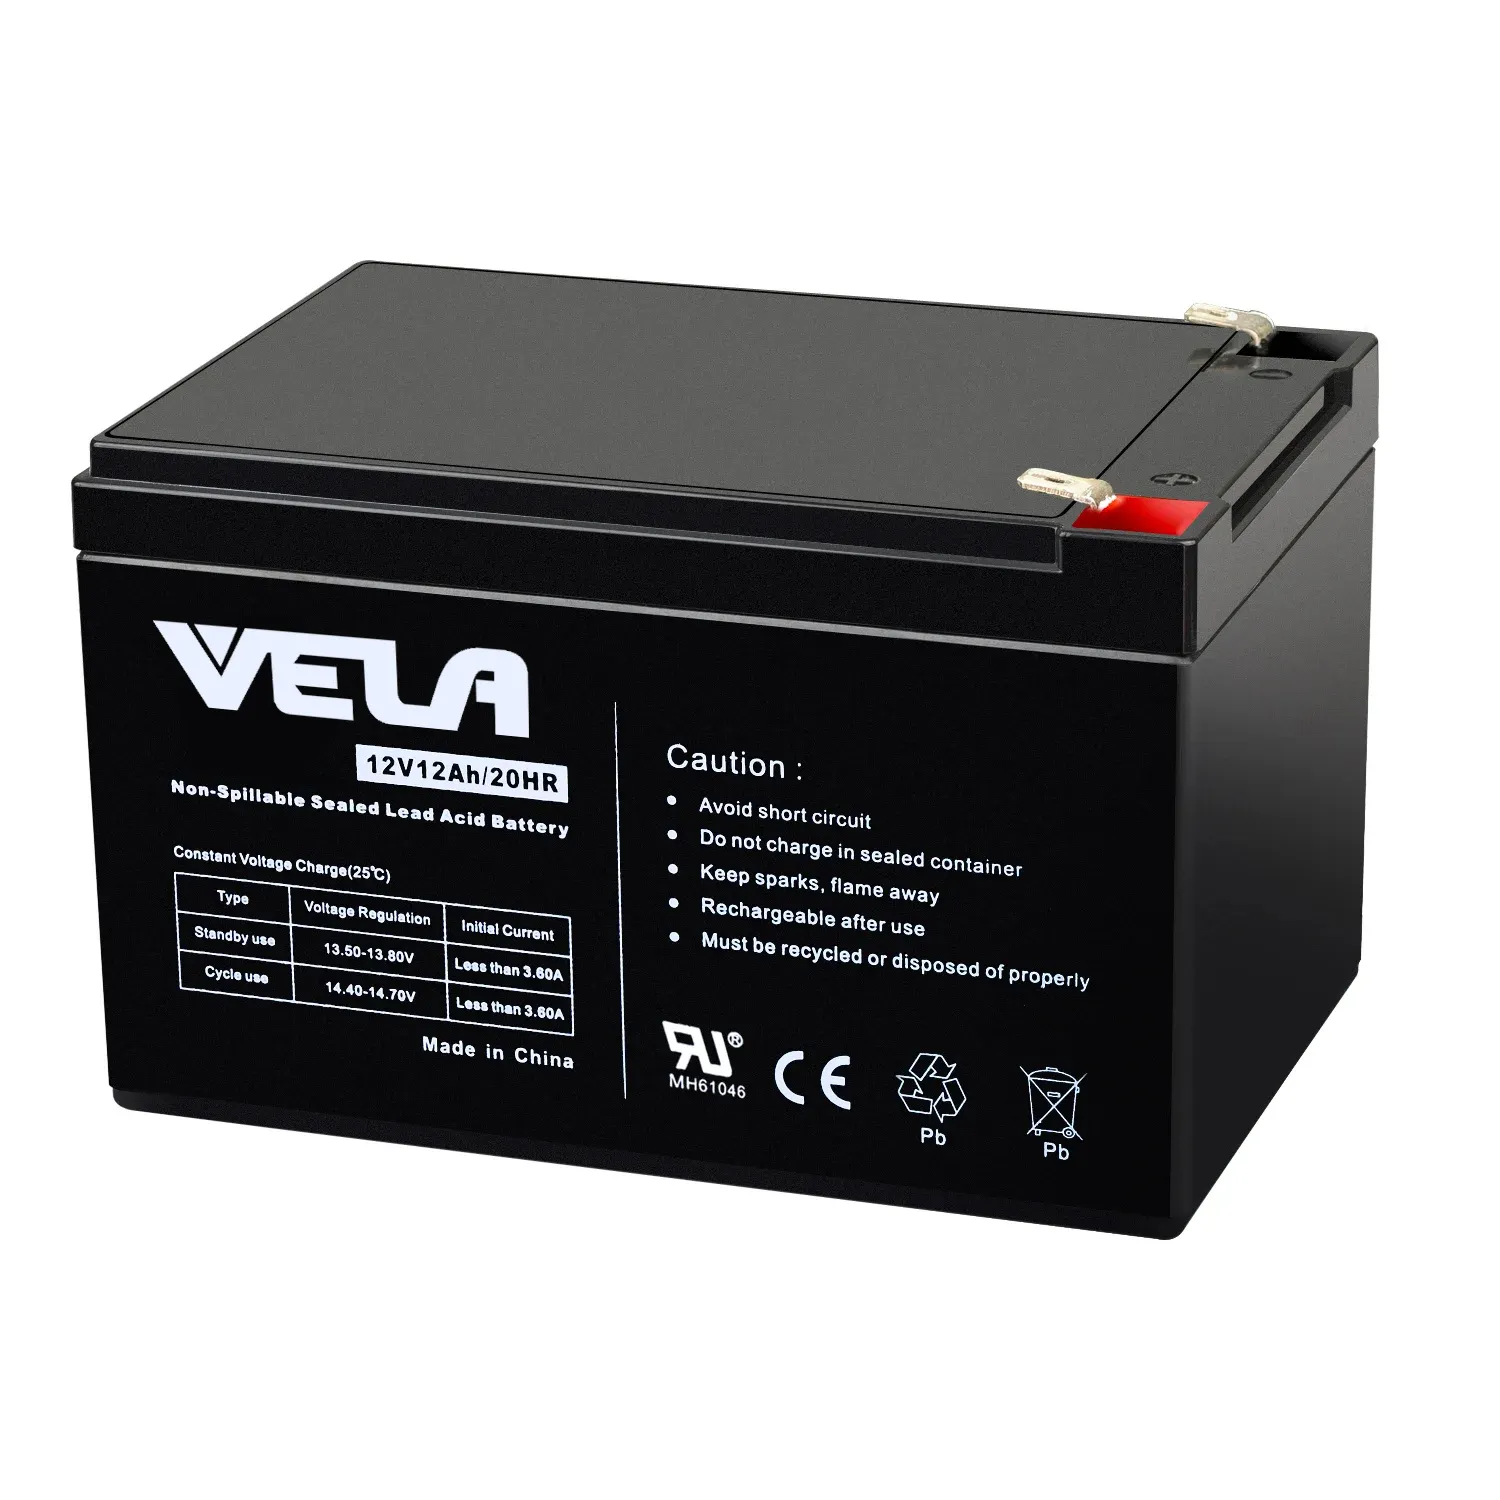 सौर ऊर्जा के लिए 12V 12ah के साथ VELA FP12120 लंबी सेवा लीड-एसिड बैटरी